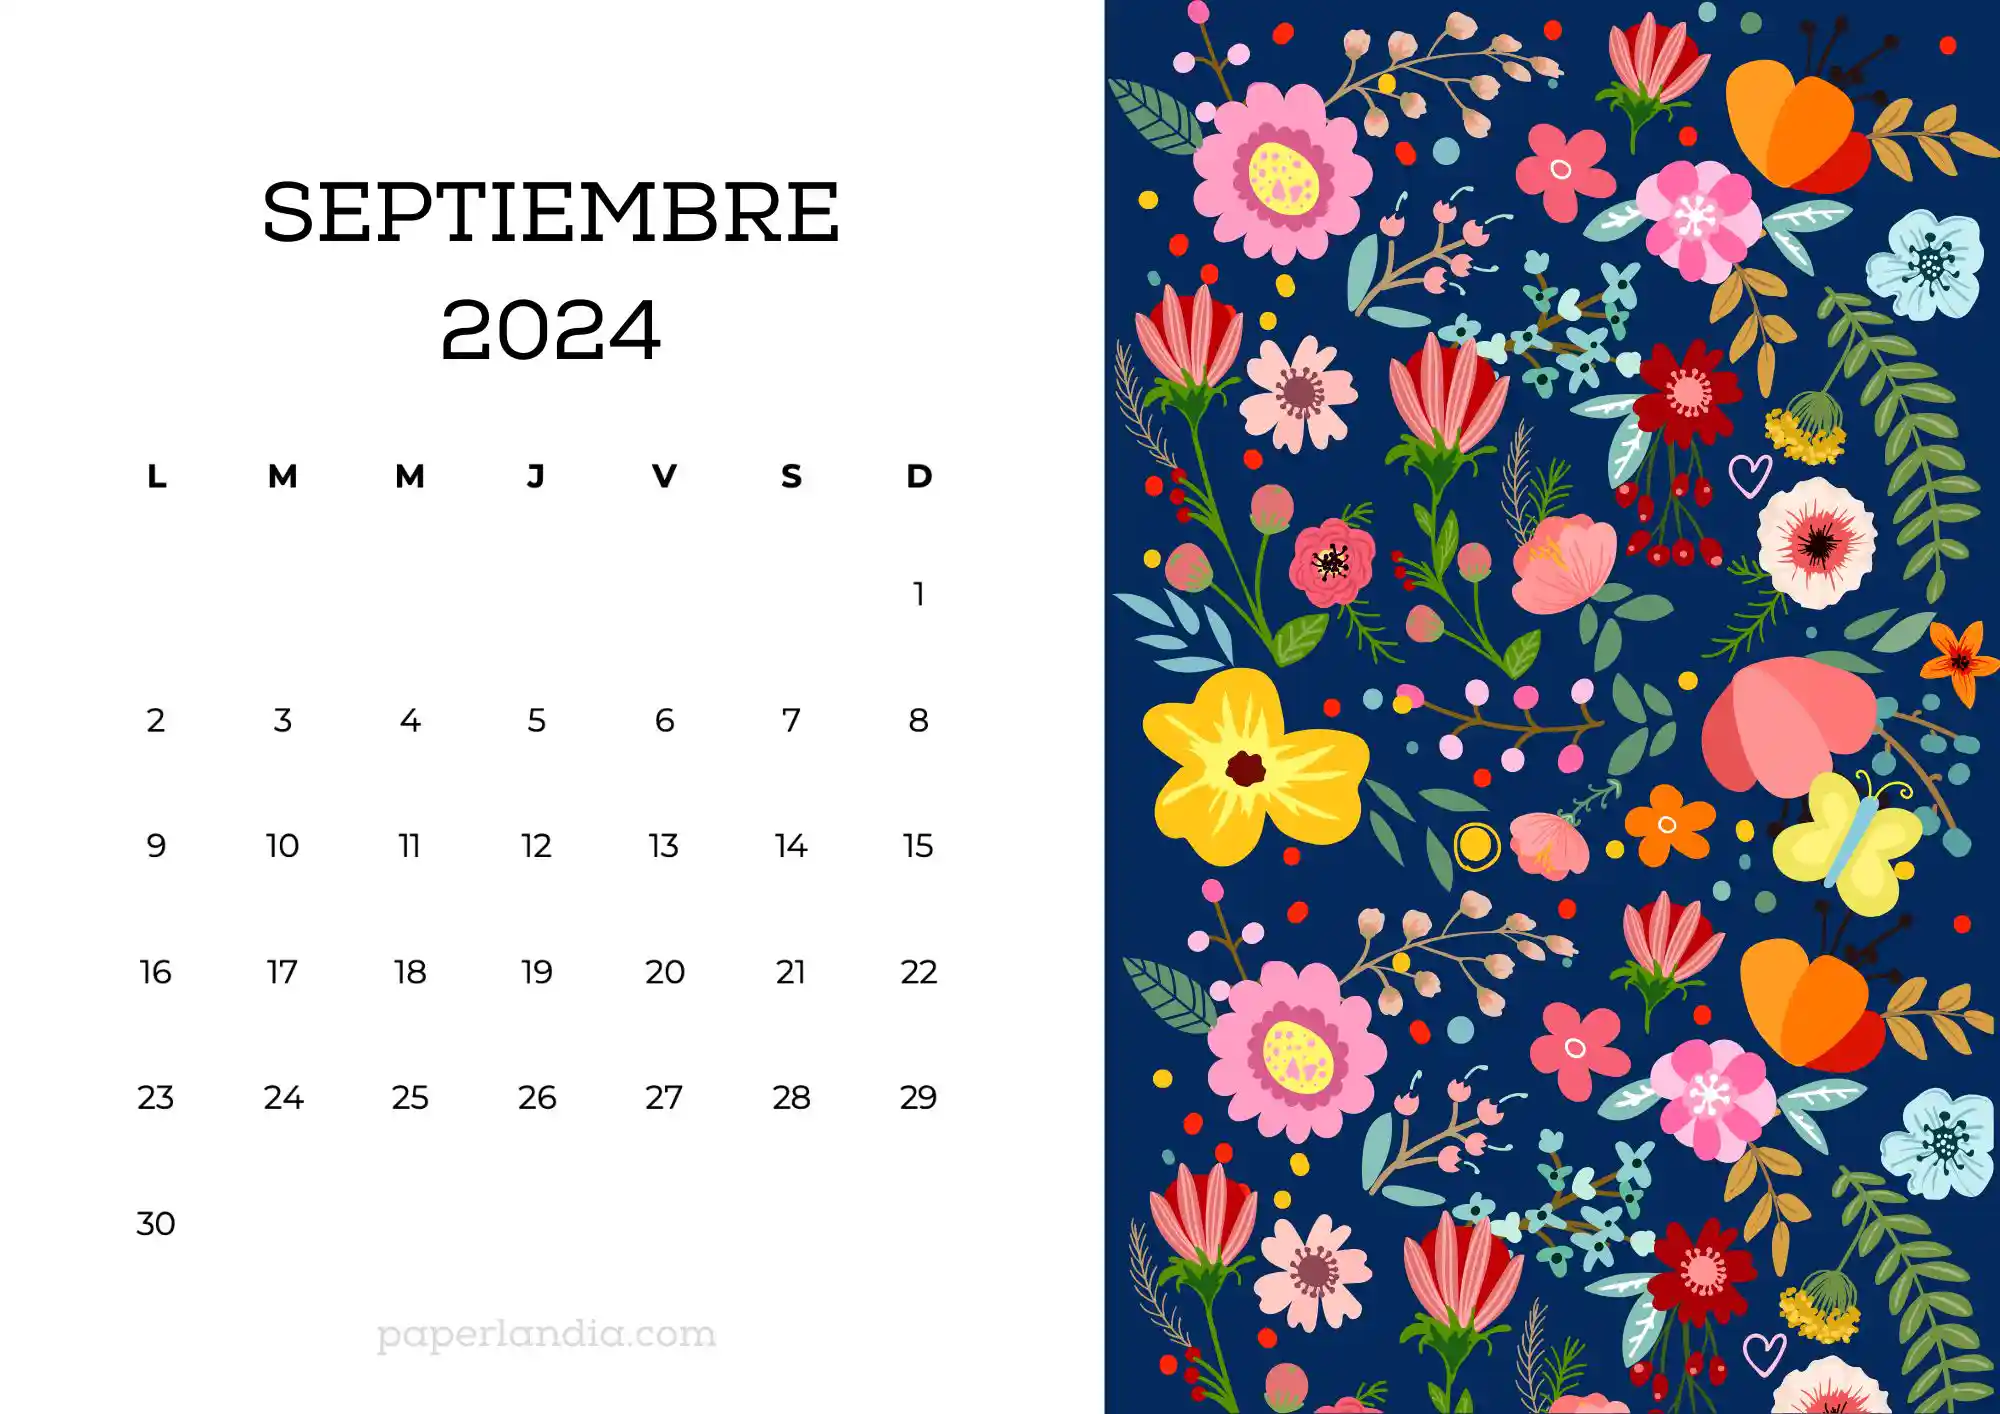 Calendario septiembre 2024 horizontal con flores escandinavas fondo azul